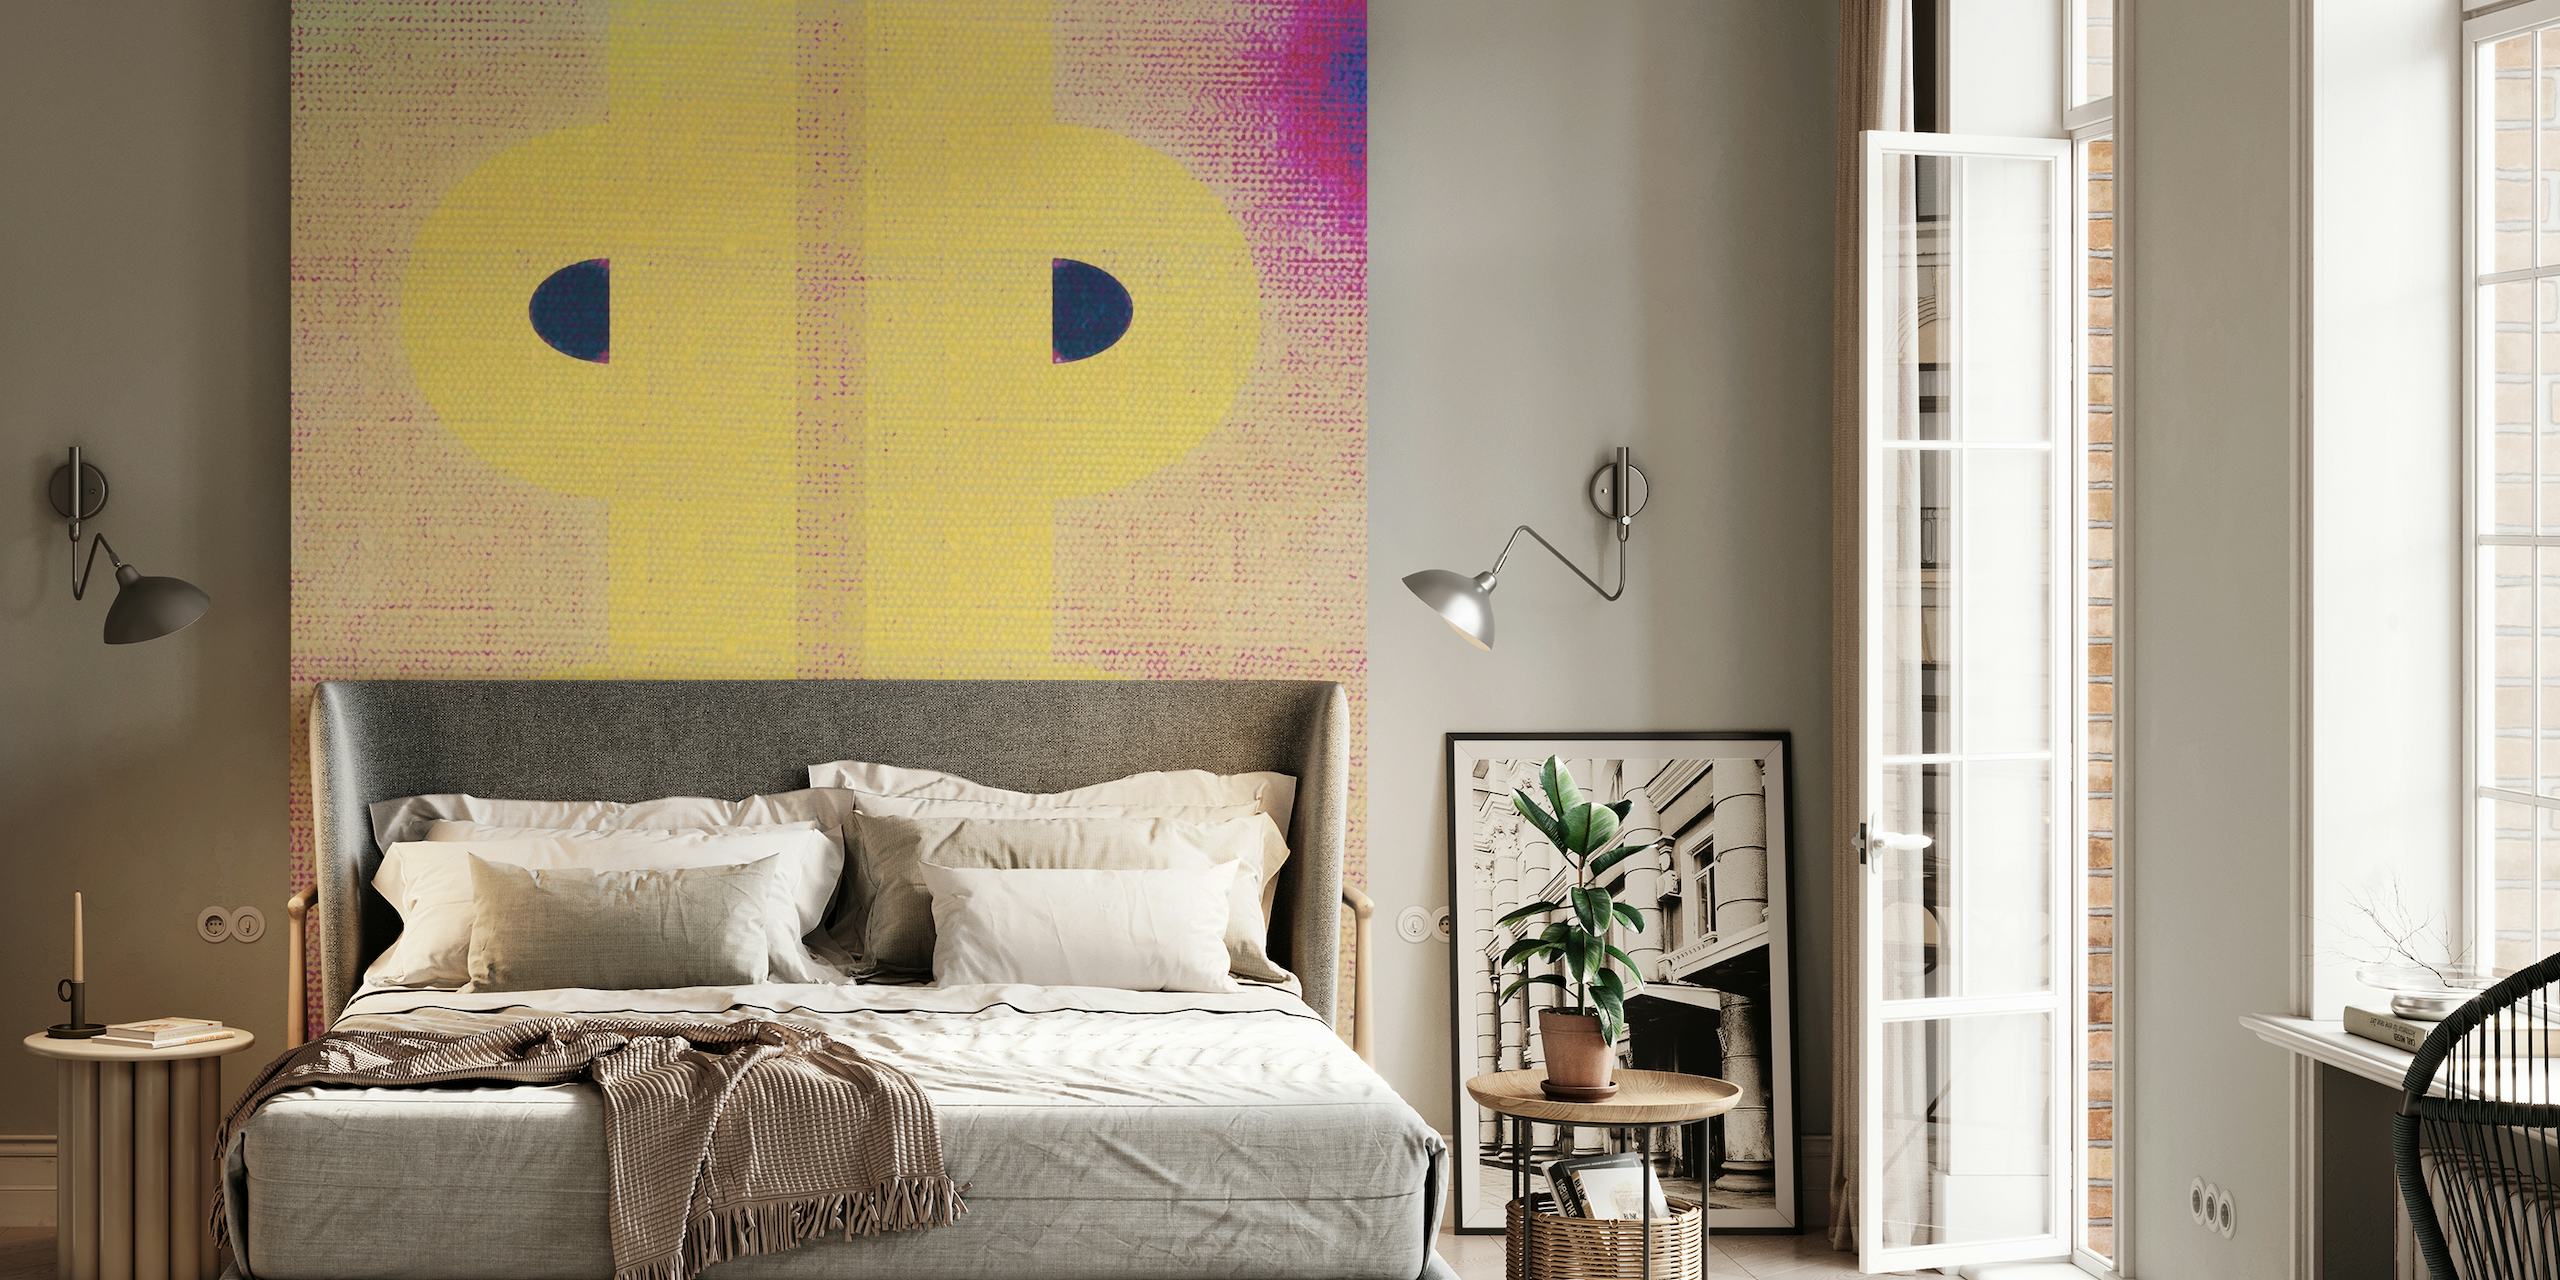 Mural de pared Contemporary Abstract 09 con tonos pastel y formas atrevidas